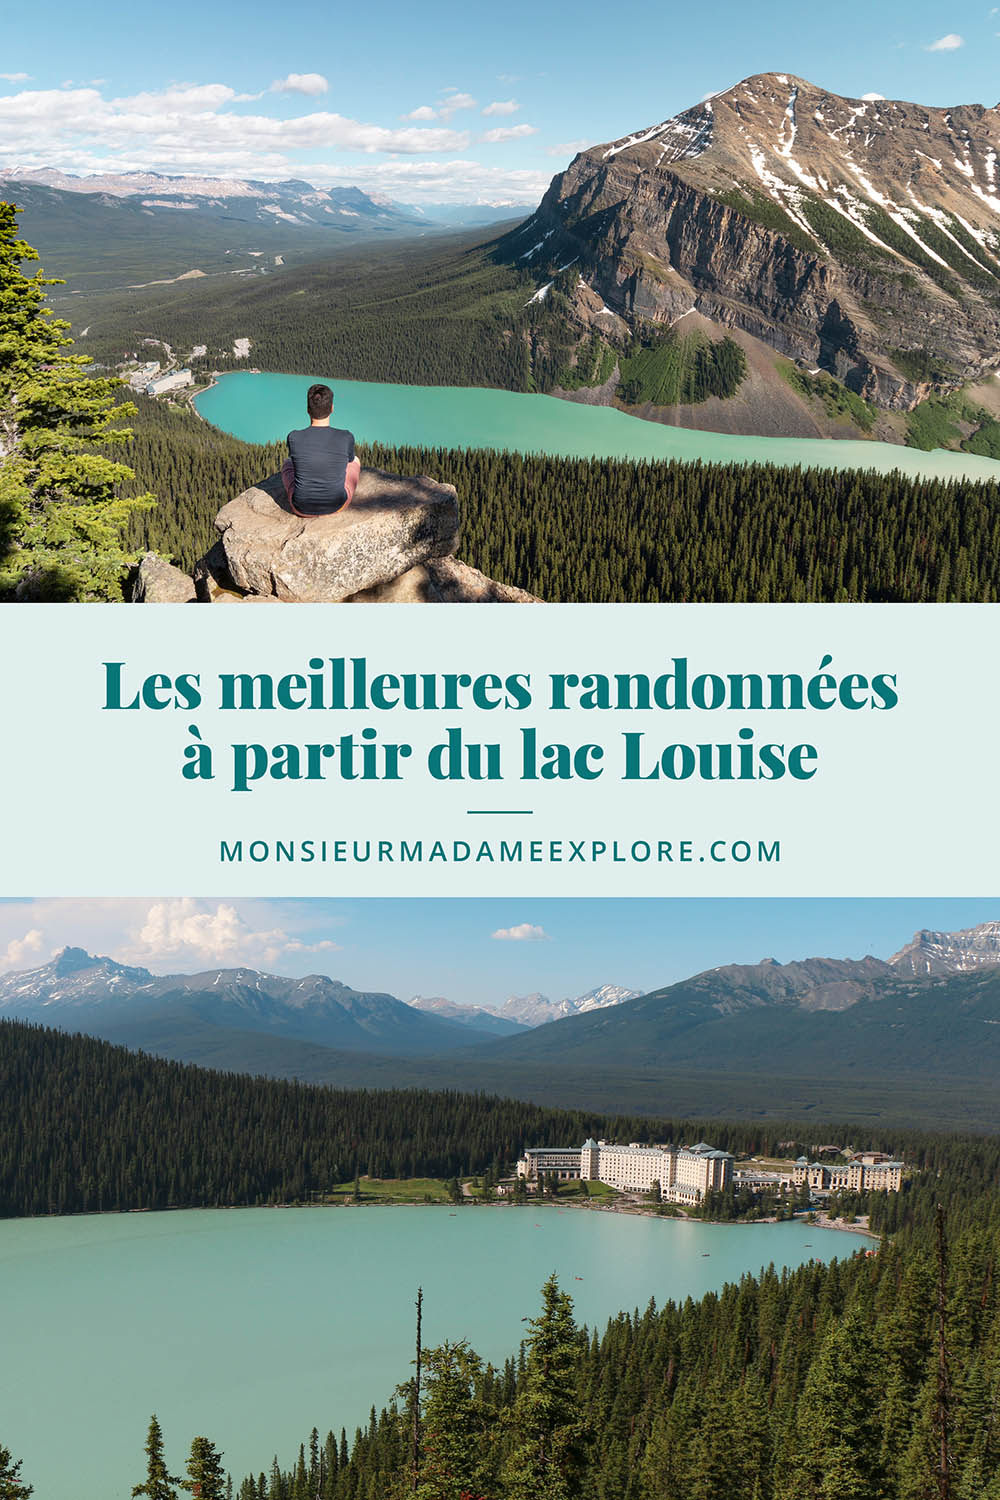 Les meilleures randonnées à partir du lac Louise, Monsieur+Madame Explore, Blogue de voyage, Rocheuses, Canada / The best hikes to do at Lake Louise, Rockies, Canada